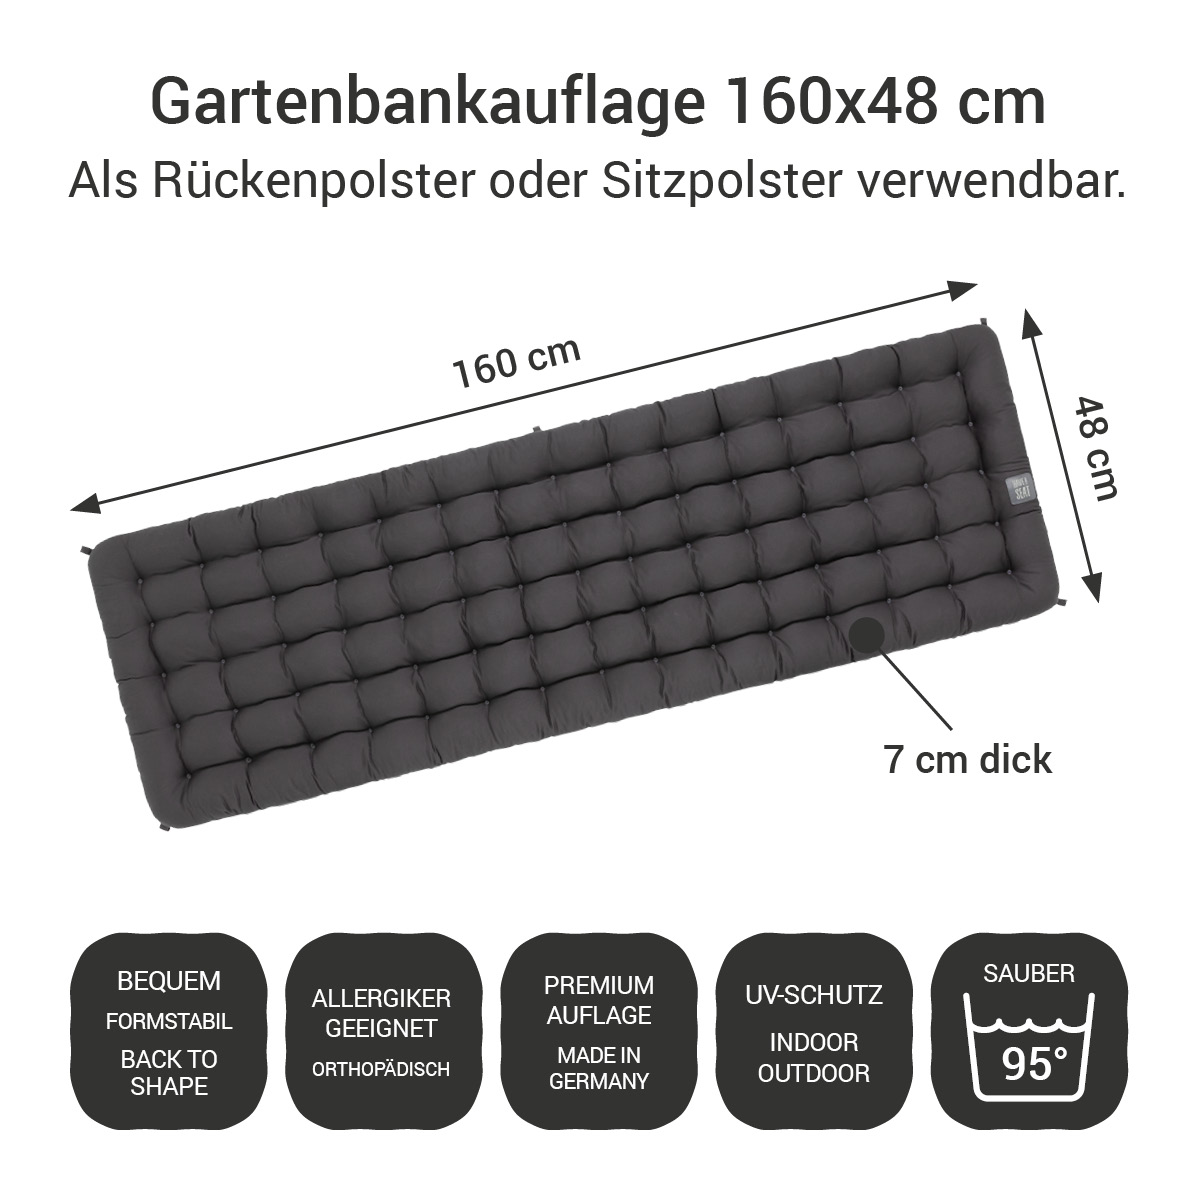 Gartenbankauflage dunkelgrau | 160x48 cm / 160 x 50 cm | bequem & orthopädisch, komplett im Ganzen waschbar bis 95°C, wetterfest, Made in Germany